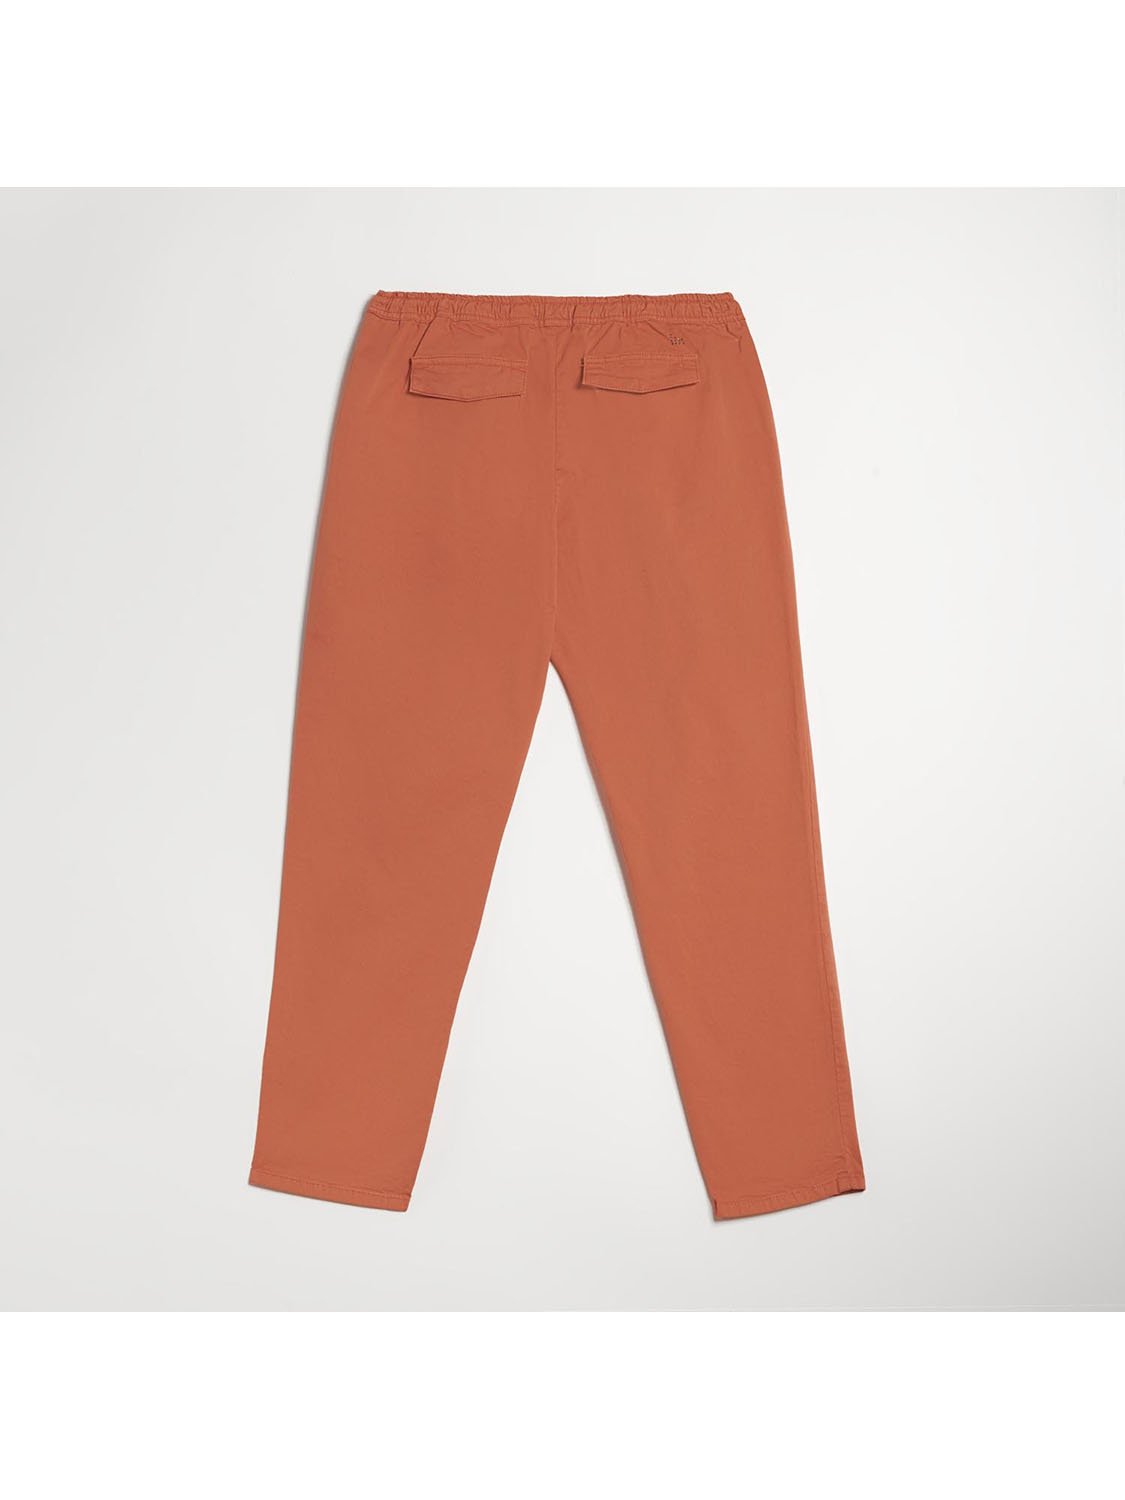 Pantalon Fluide Femme Coton Biologique Orange